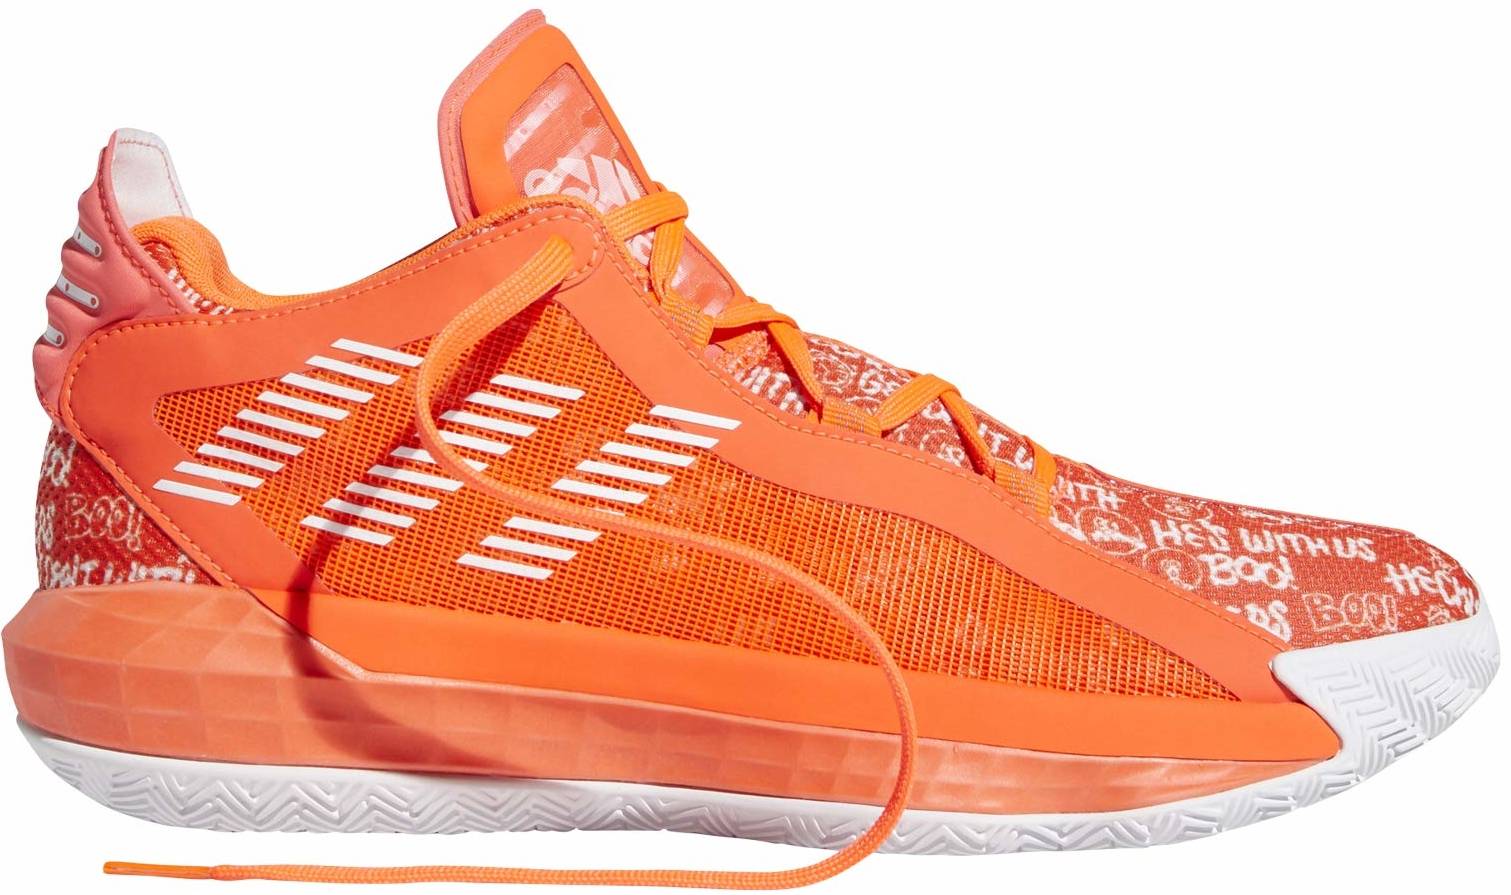 orange and black adidas basketball shoes